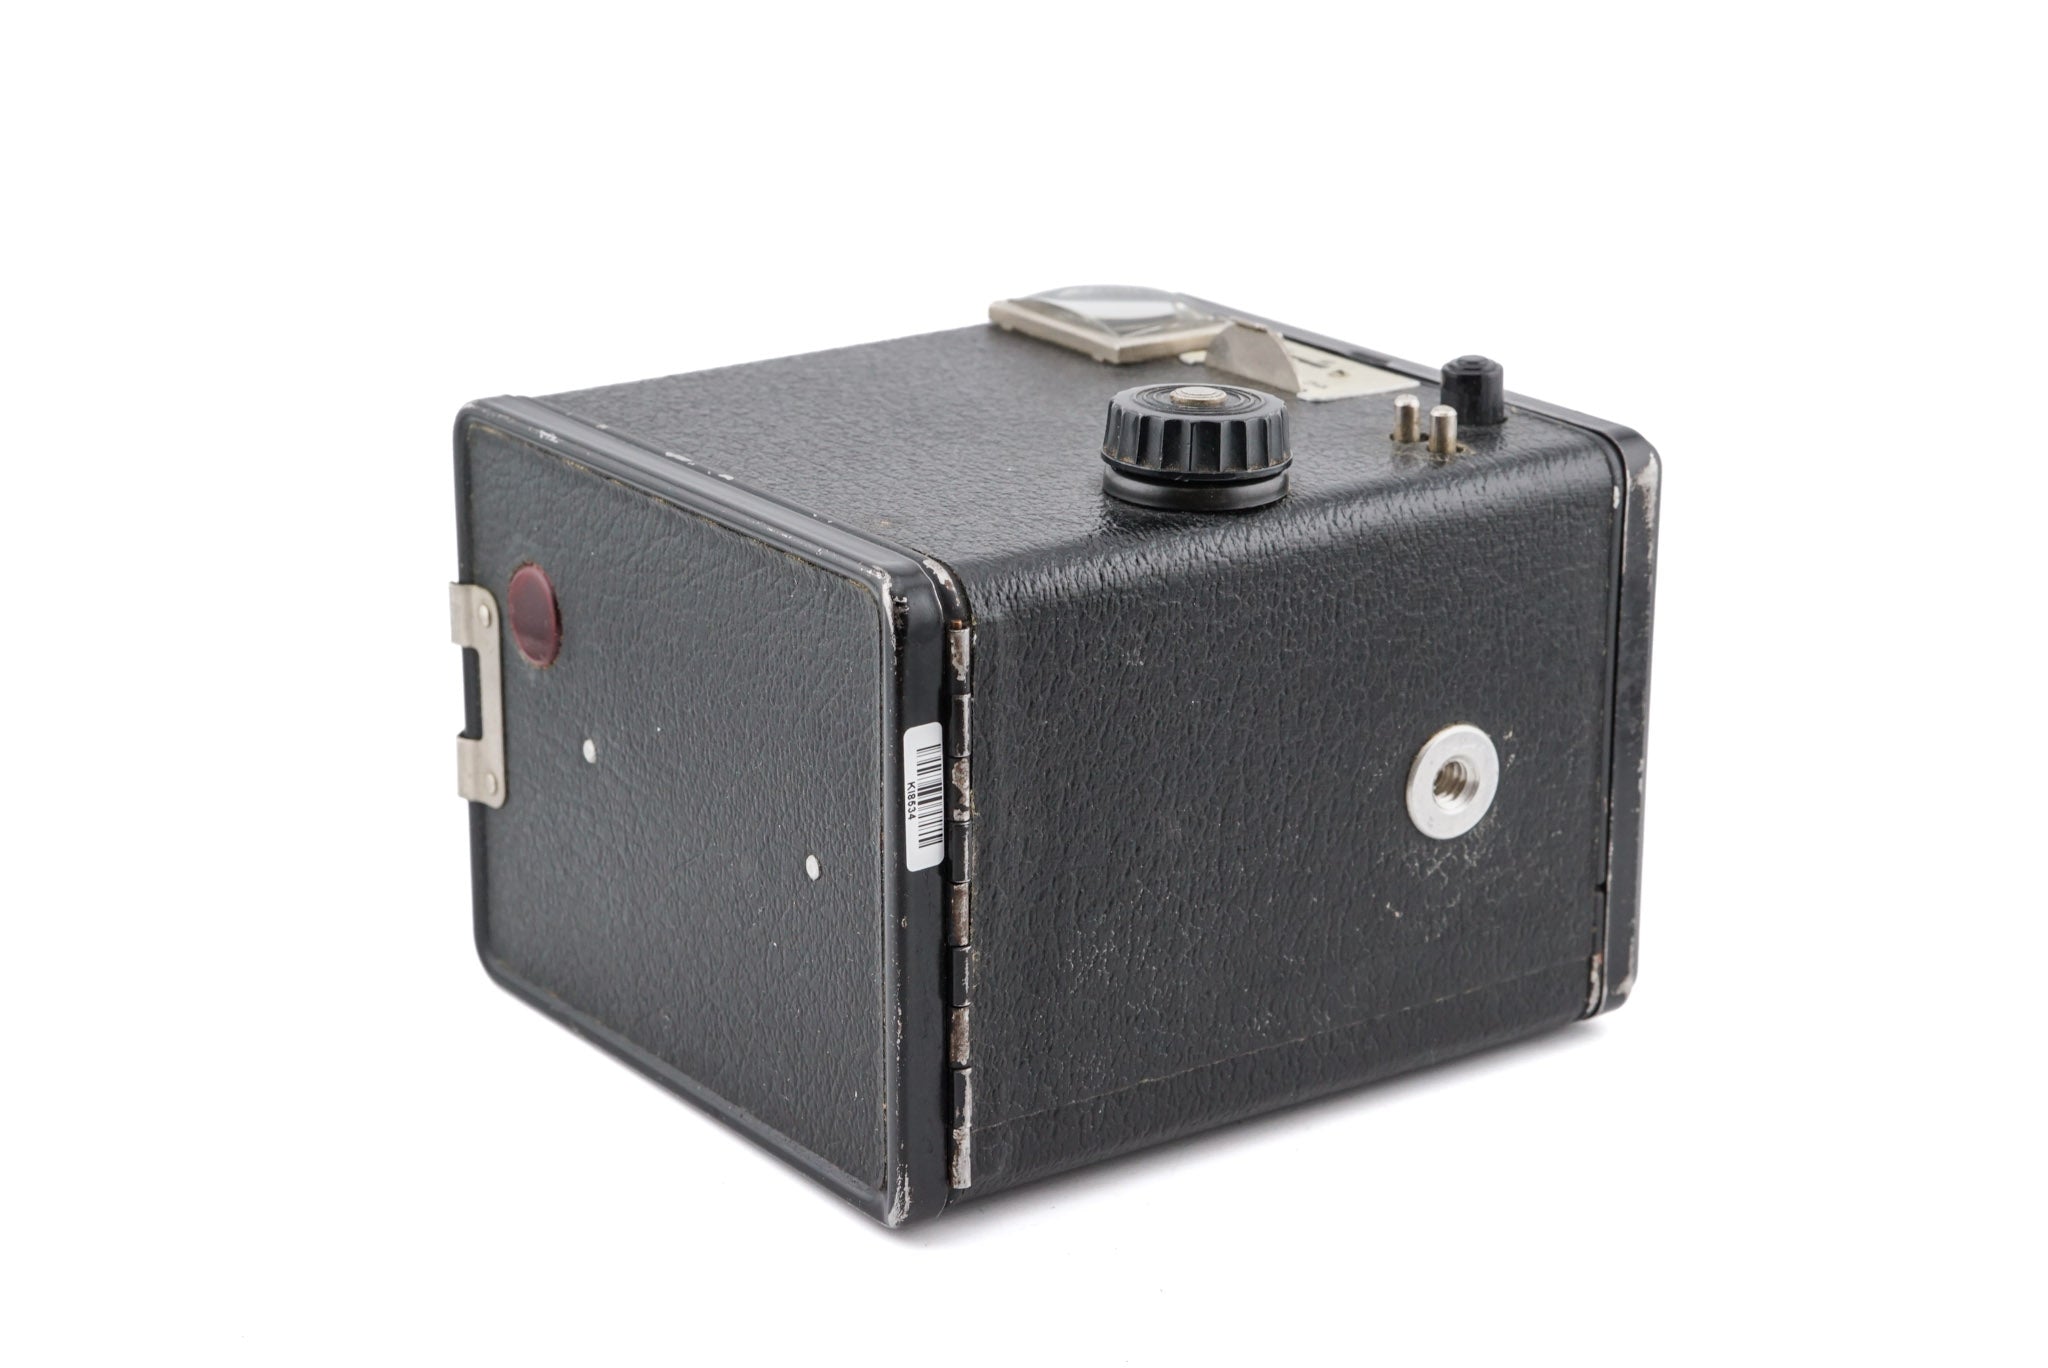 Kodak Six-20 Brownie Model D